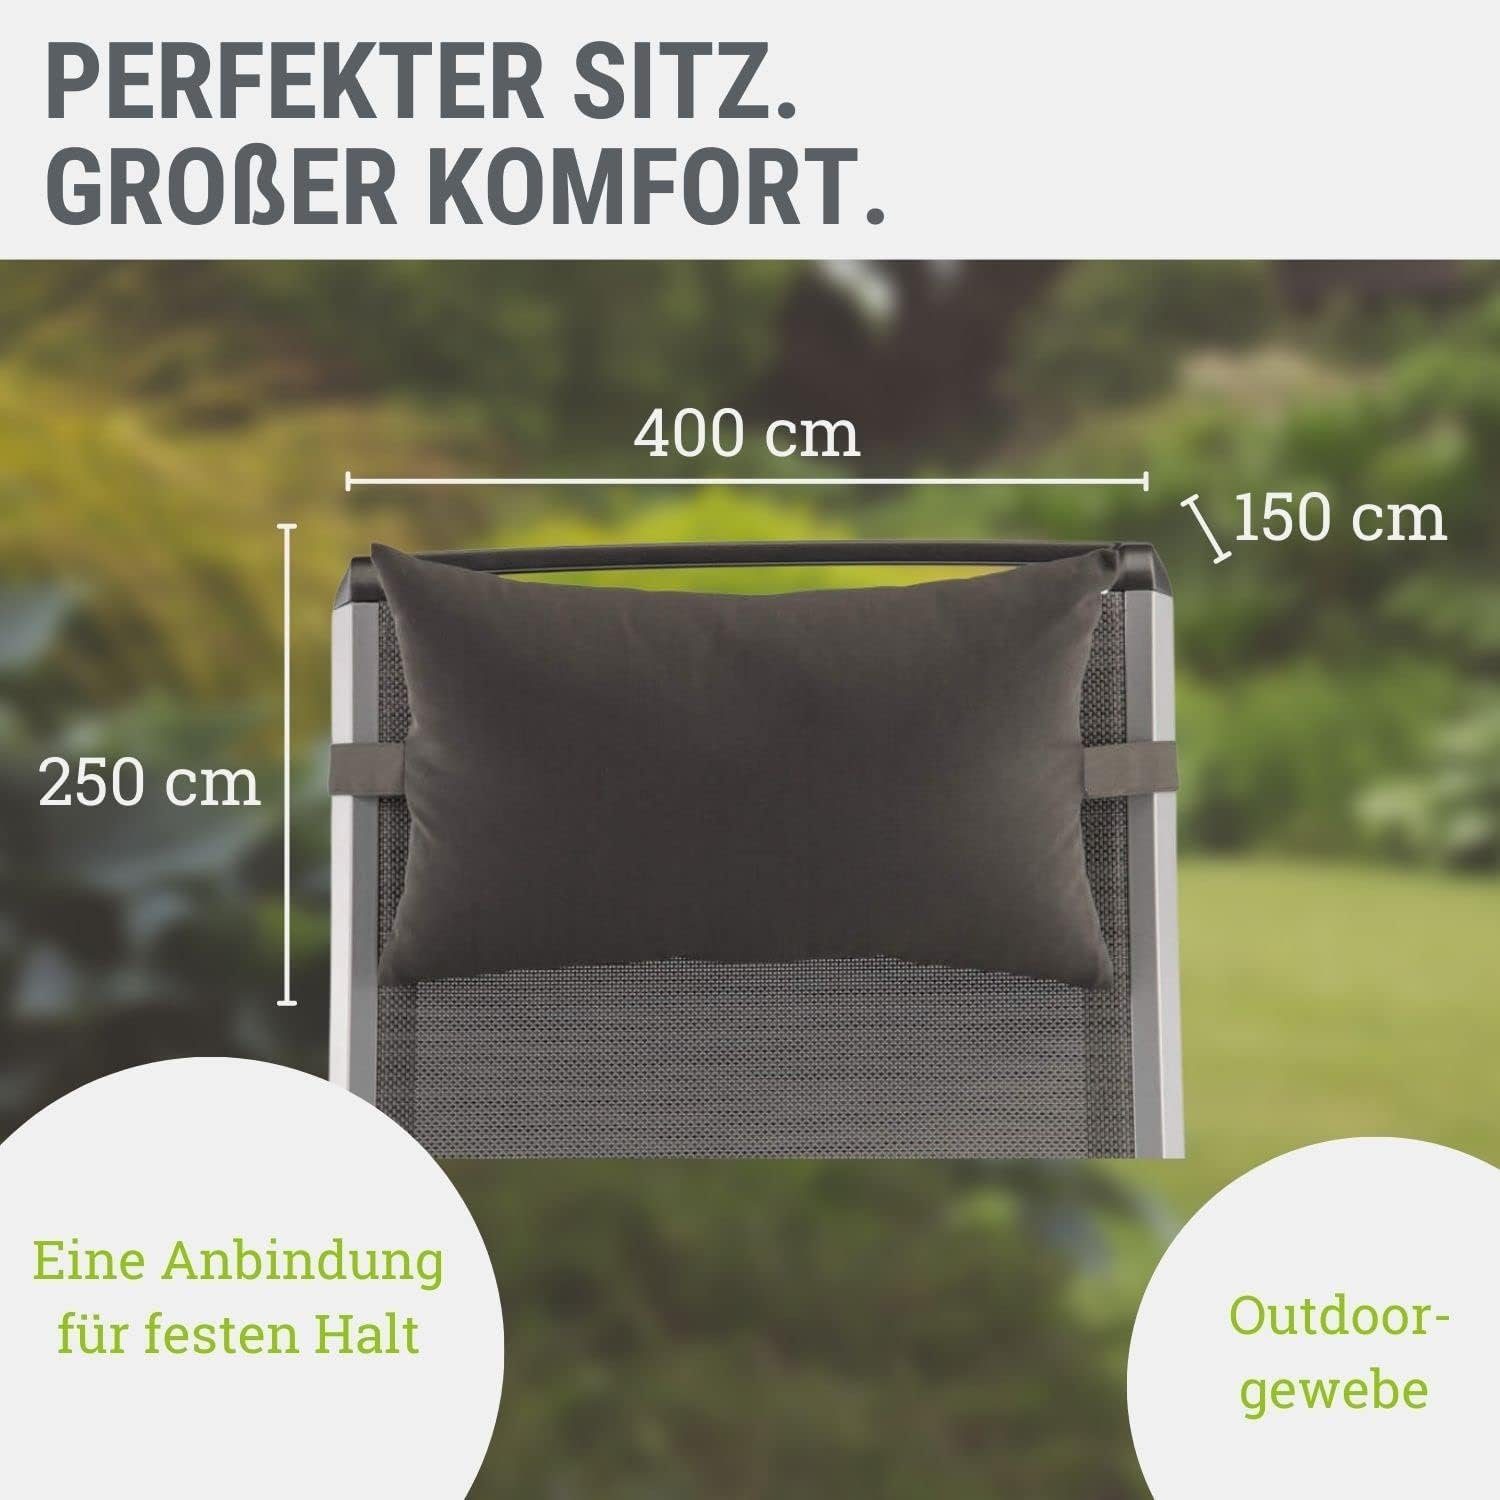 KETTtex-Exklusiv® Comfort Gartenmöbel-Polster mit besonders